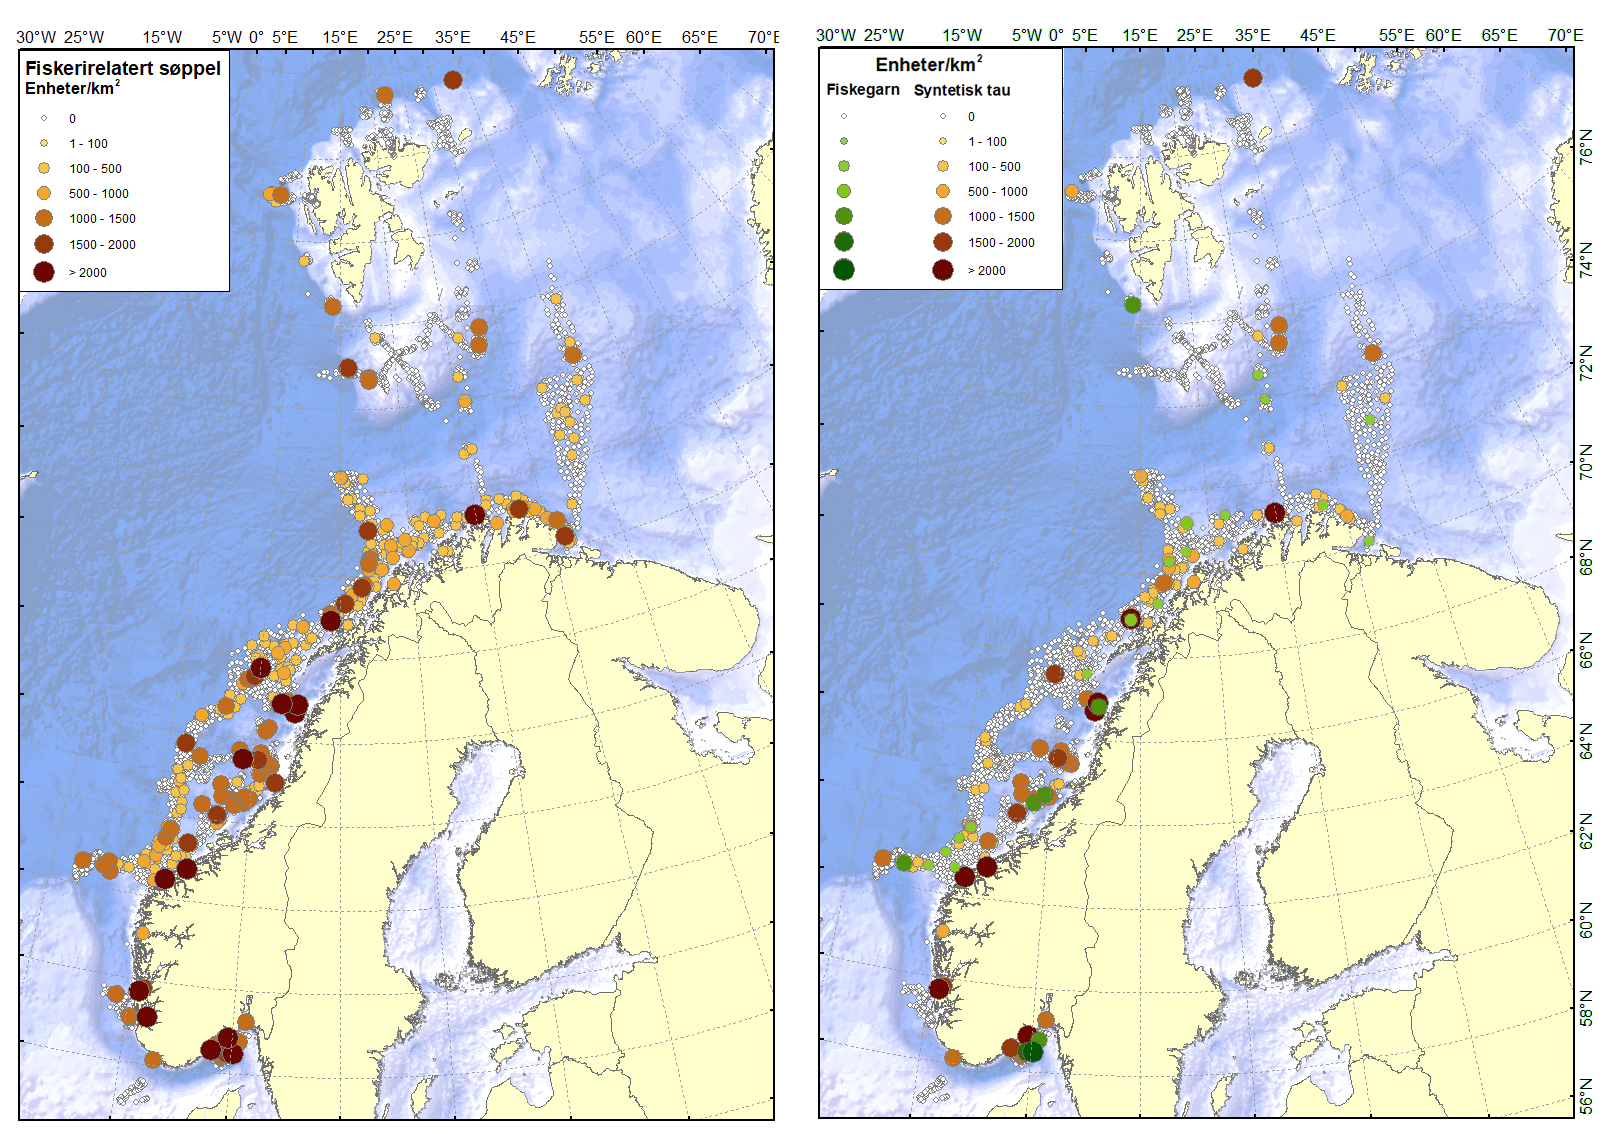 To kart over norskekysten med punkter som viser søppelfunn knyttet til fiskeriaktivitet.